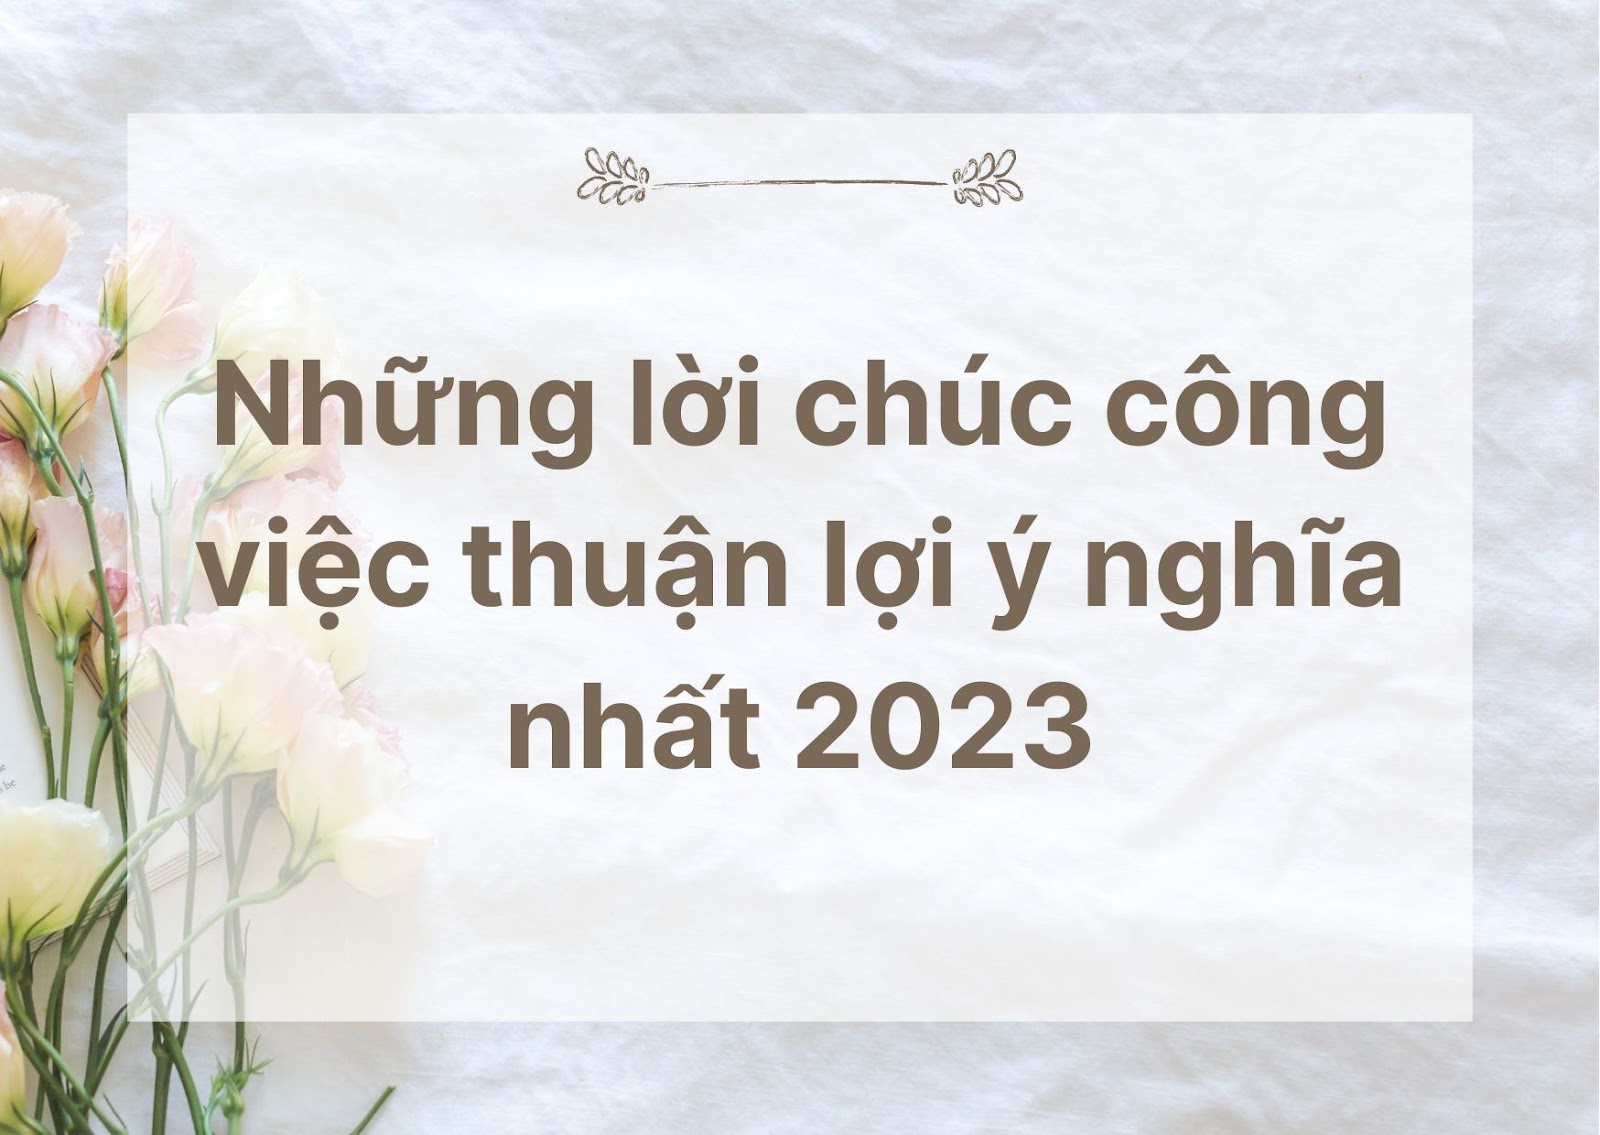 nhung loi chuc cong viec thuan loi y nghia nhat 2023